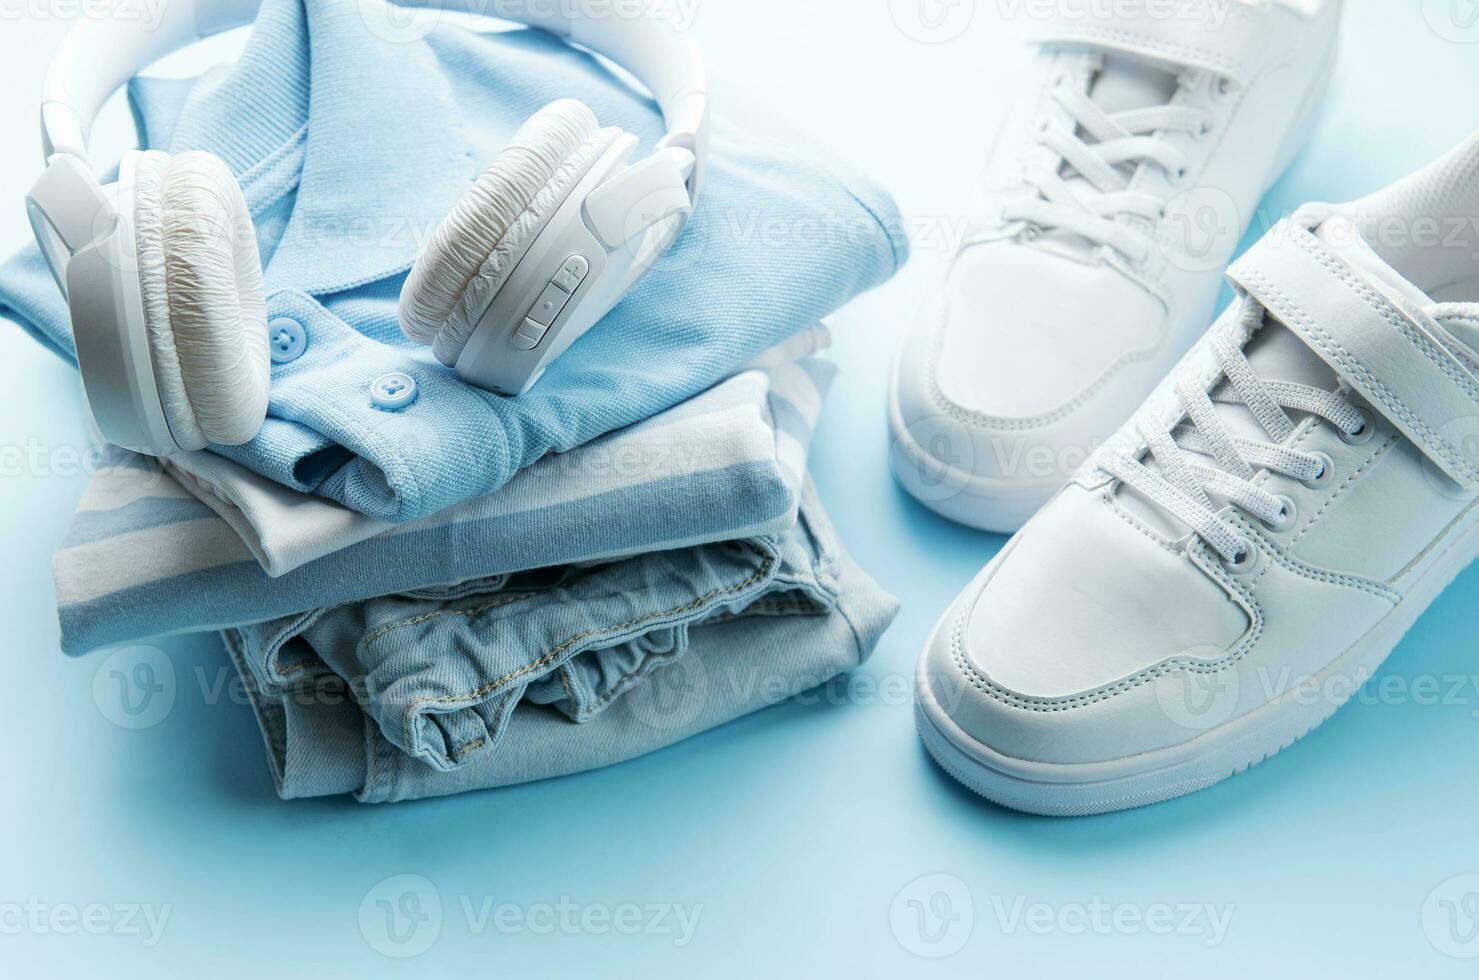 bambino S t camicia, scarpe e cuffie su blu backgrund foto